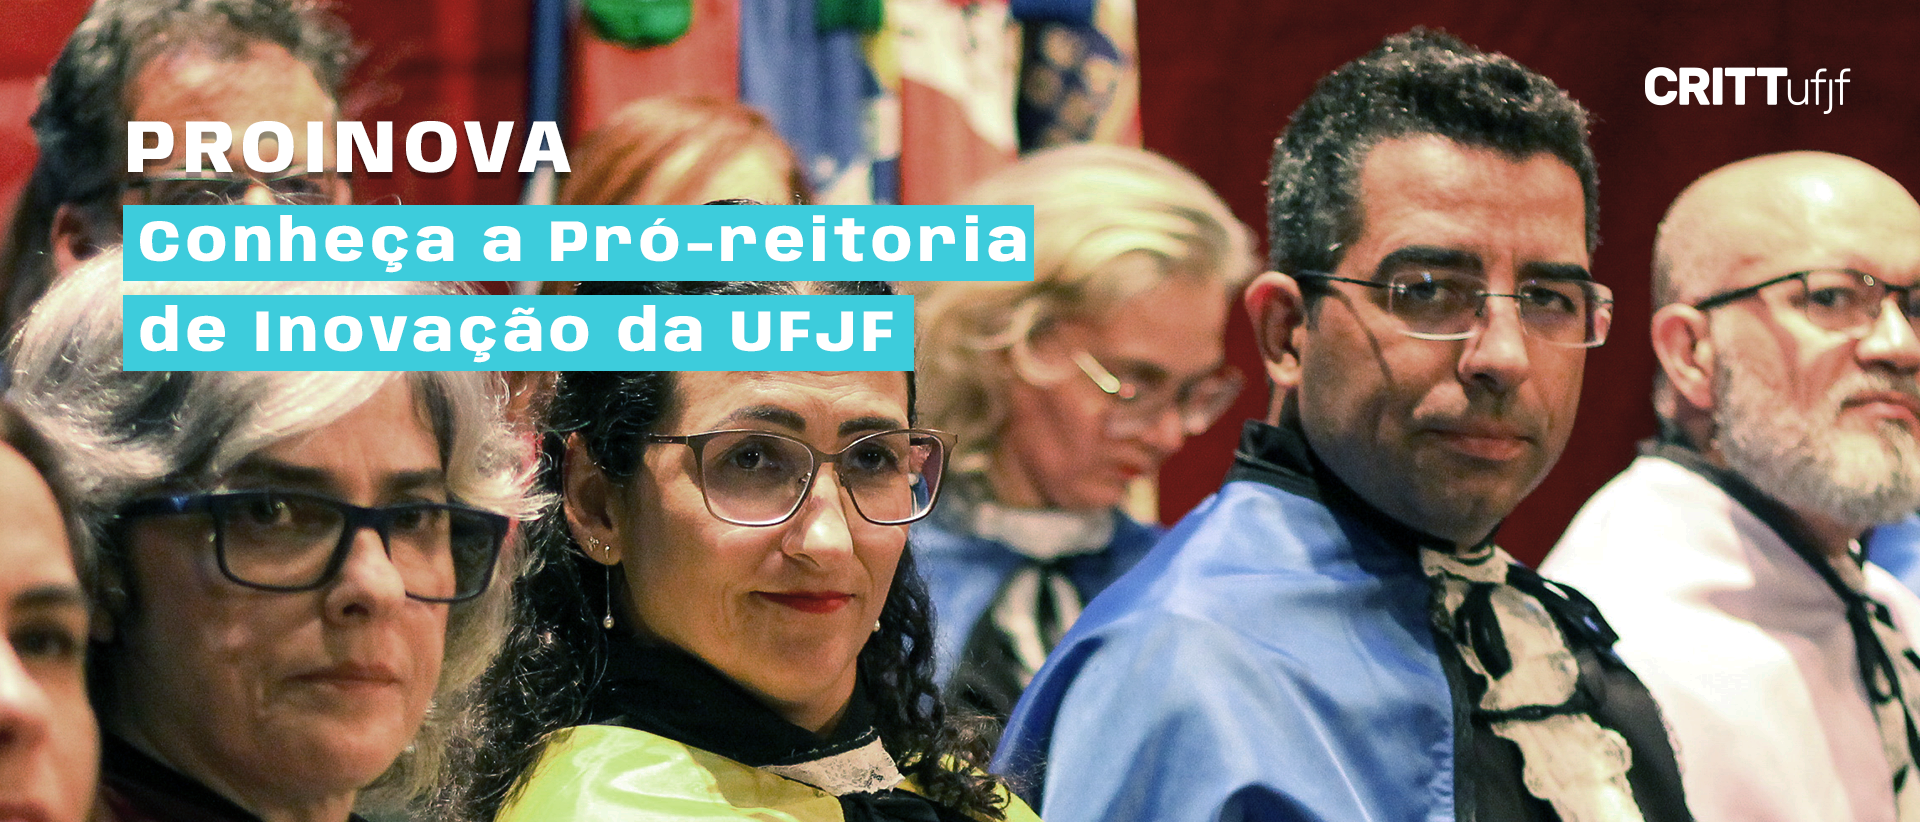 ProInova: conheça a Pró-reitoria de Inovação da UFJF 